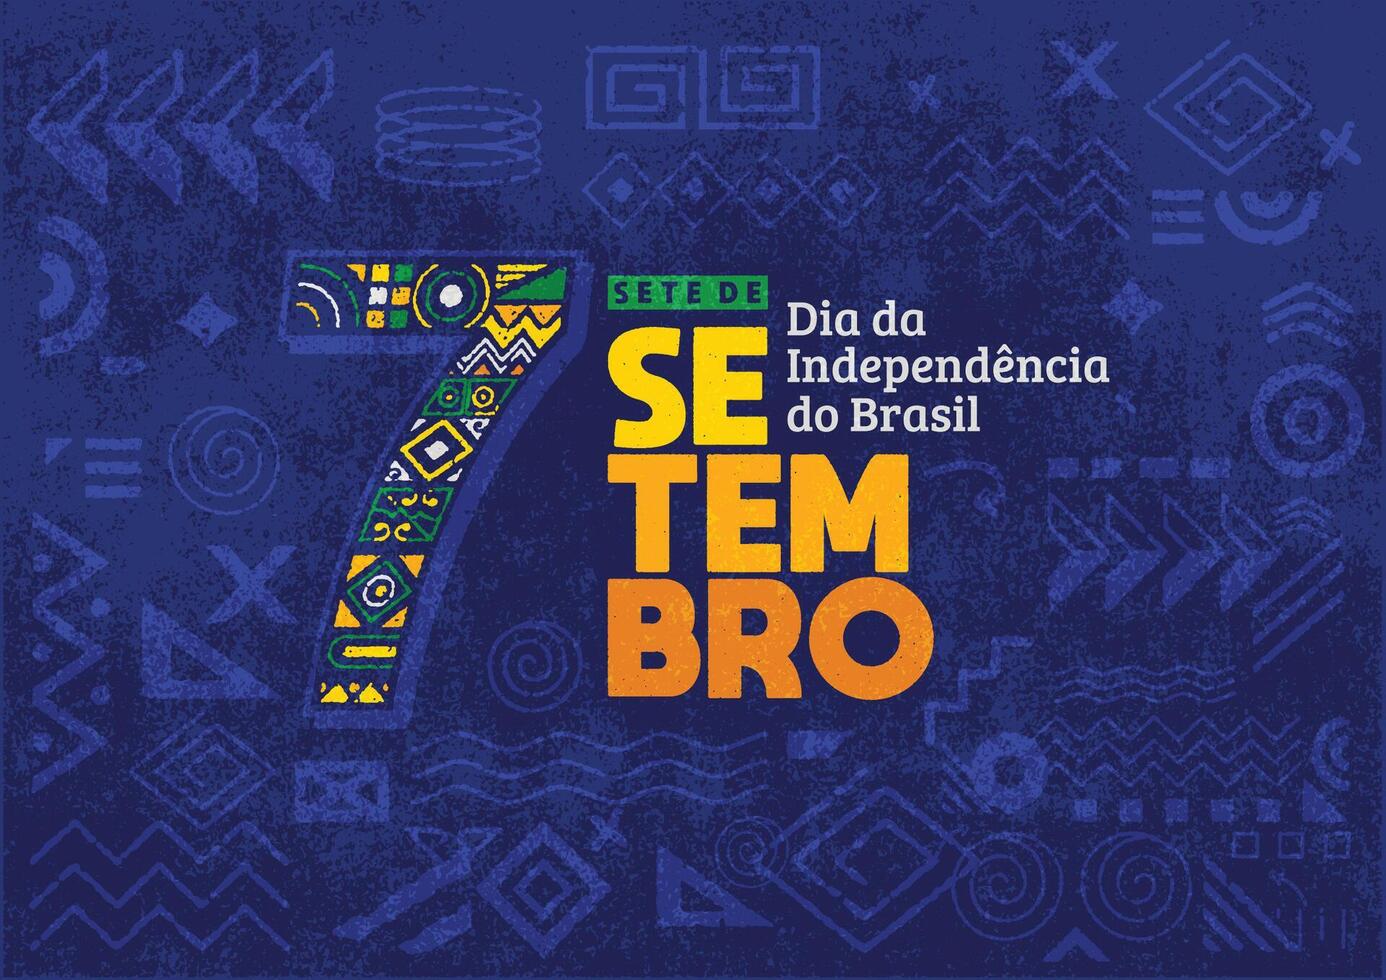 independência dia do Brasil poster fundo folheto e social meios de comunicação postar com desenhado à mão geométrico forma grunge textura. vetor